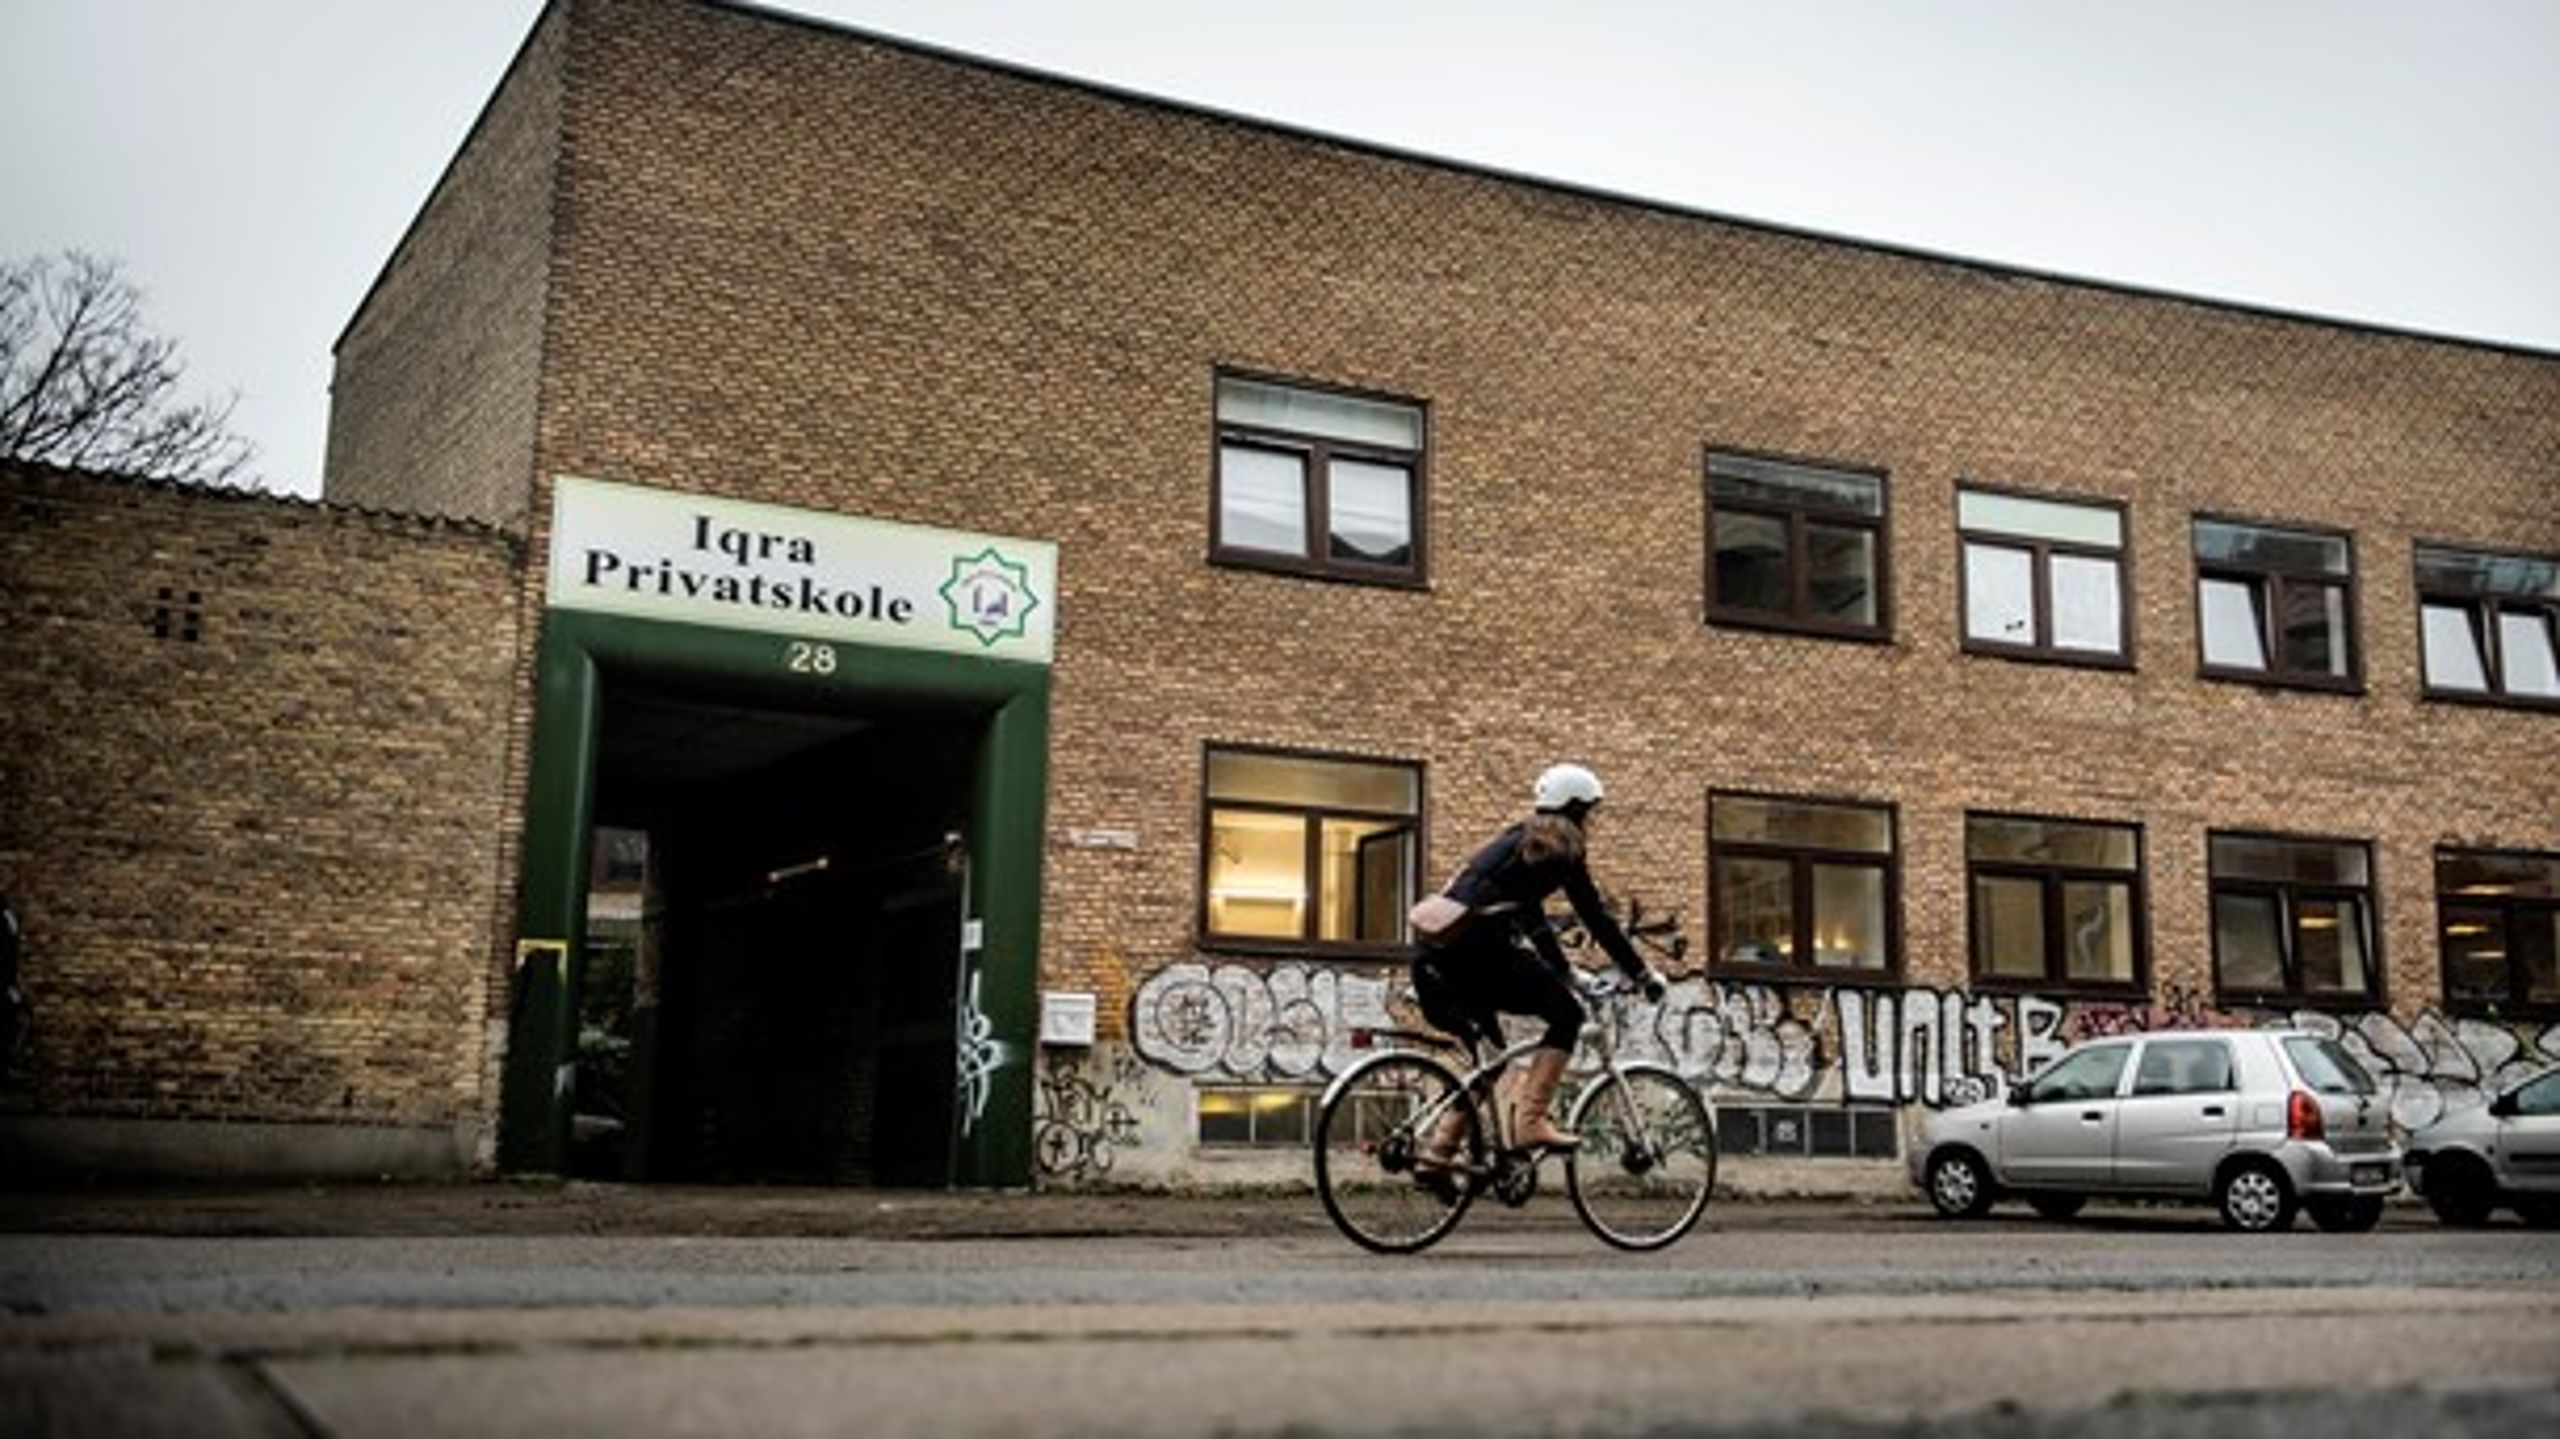 Iqra Privatskole på Nørrebro mistede i 2018 sit statstilskud. Skolen er i dag lukket.